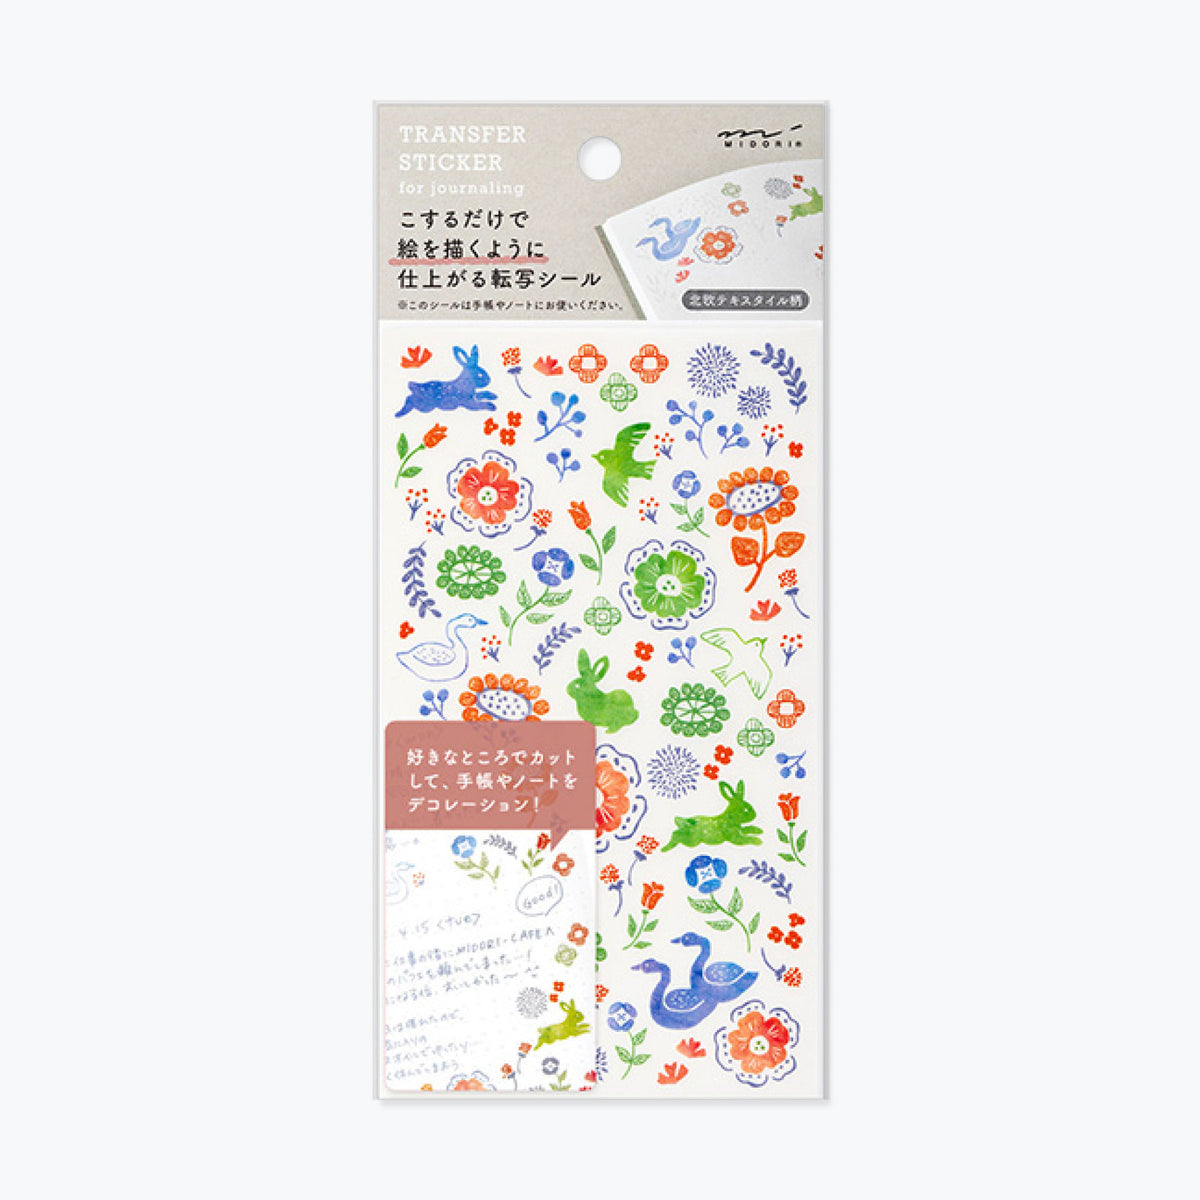 Midori - Sticker Seal - Transfer - Floral (Bright)